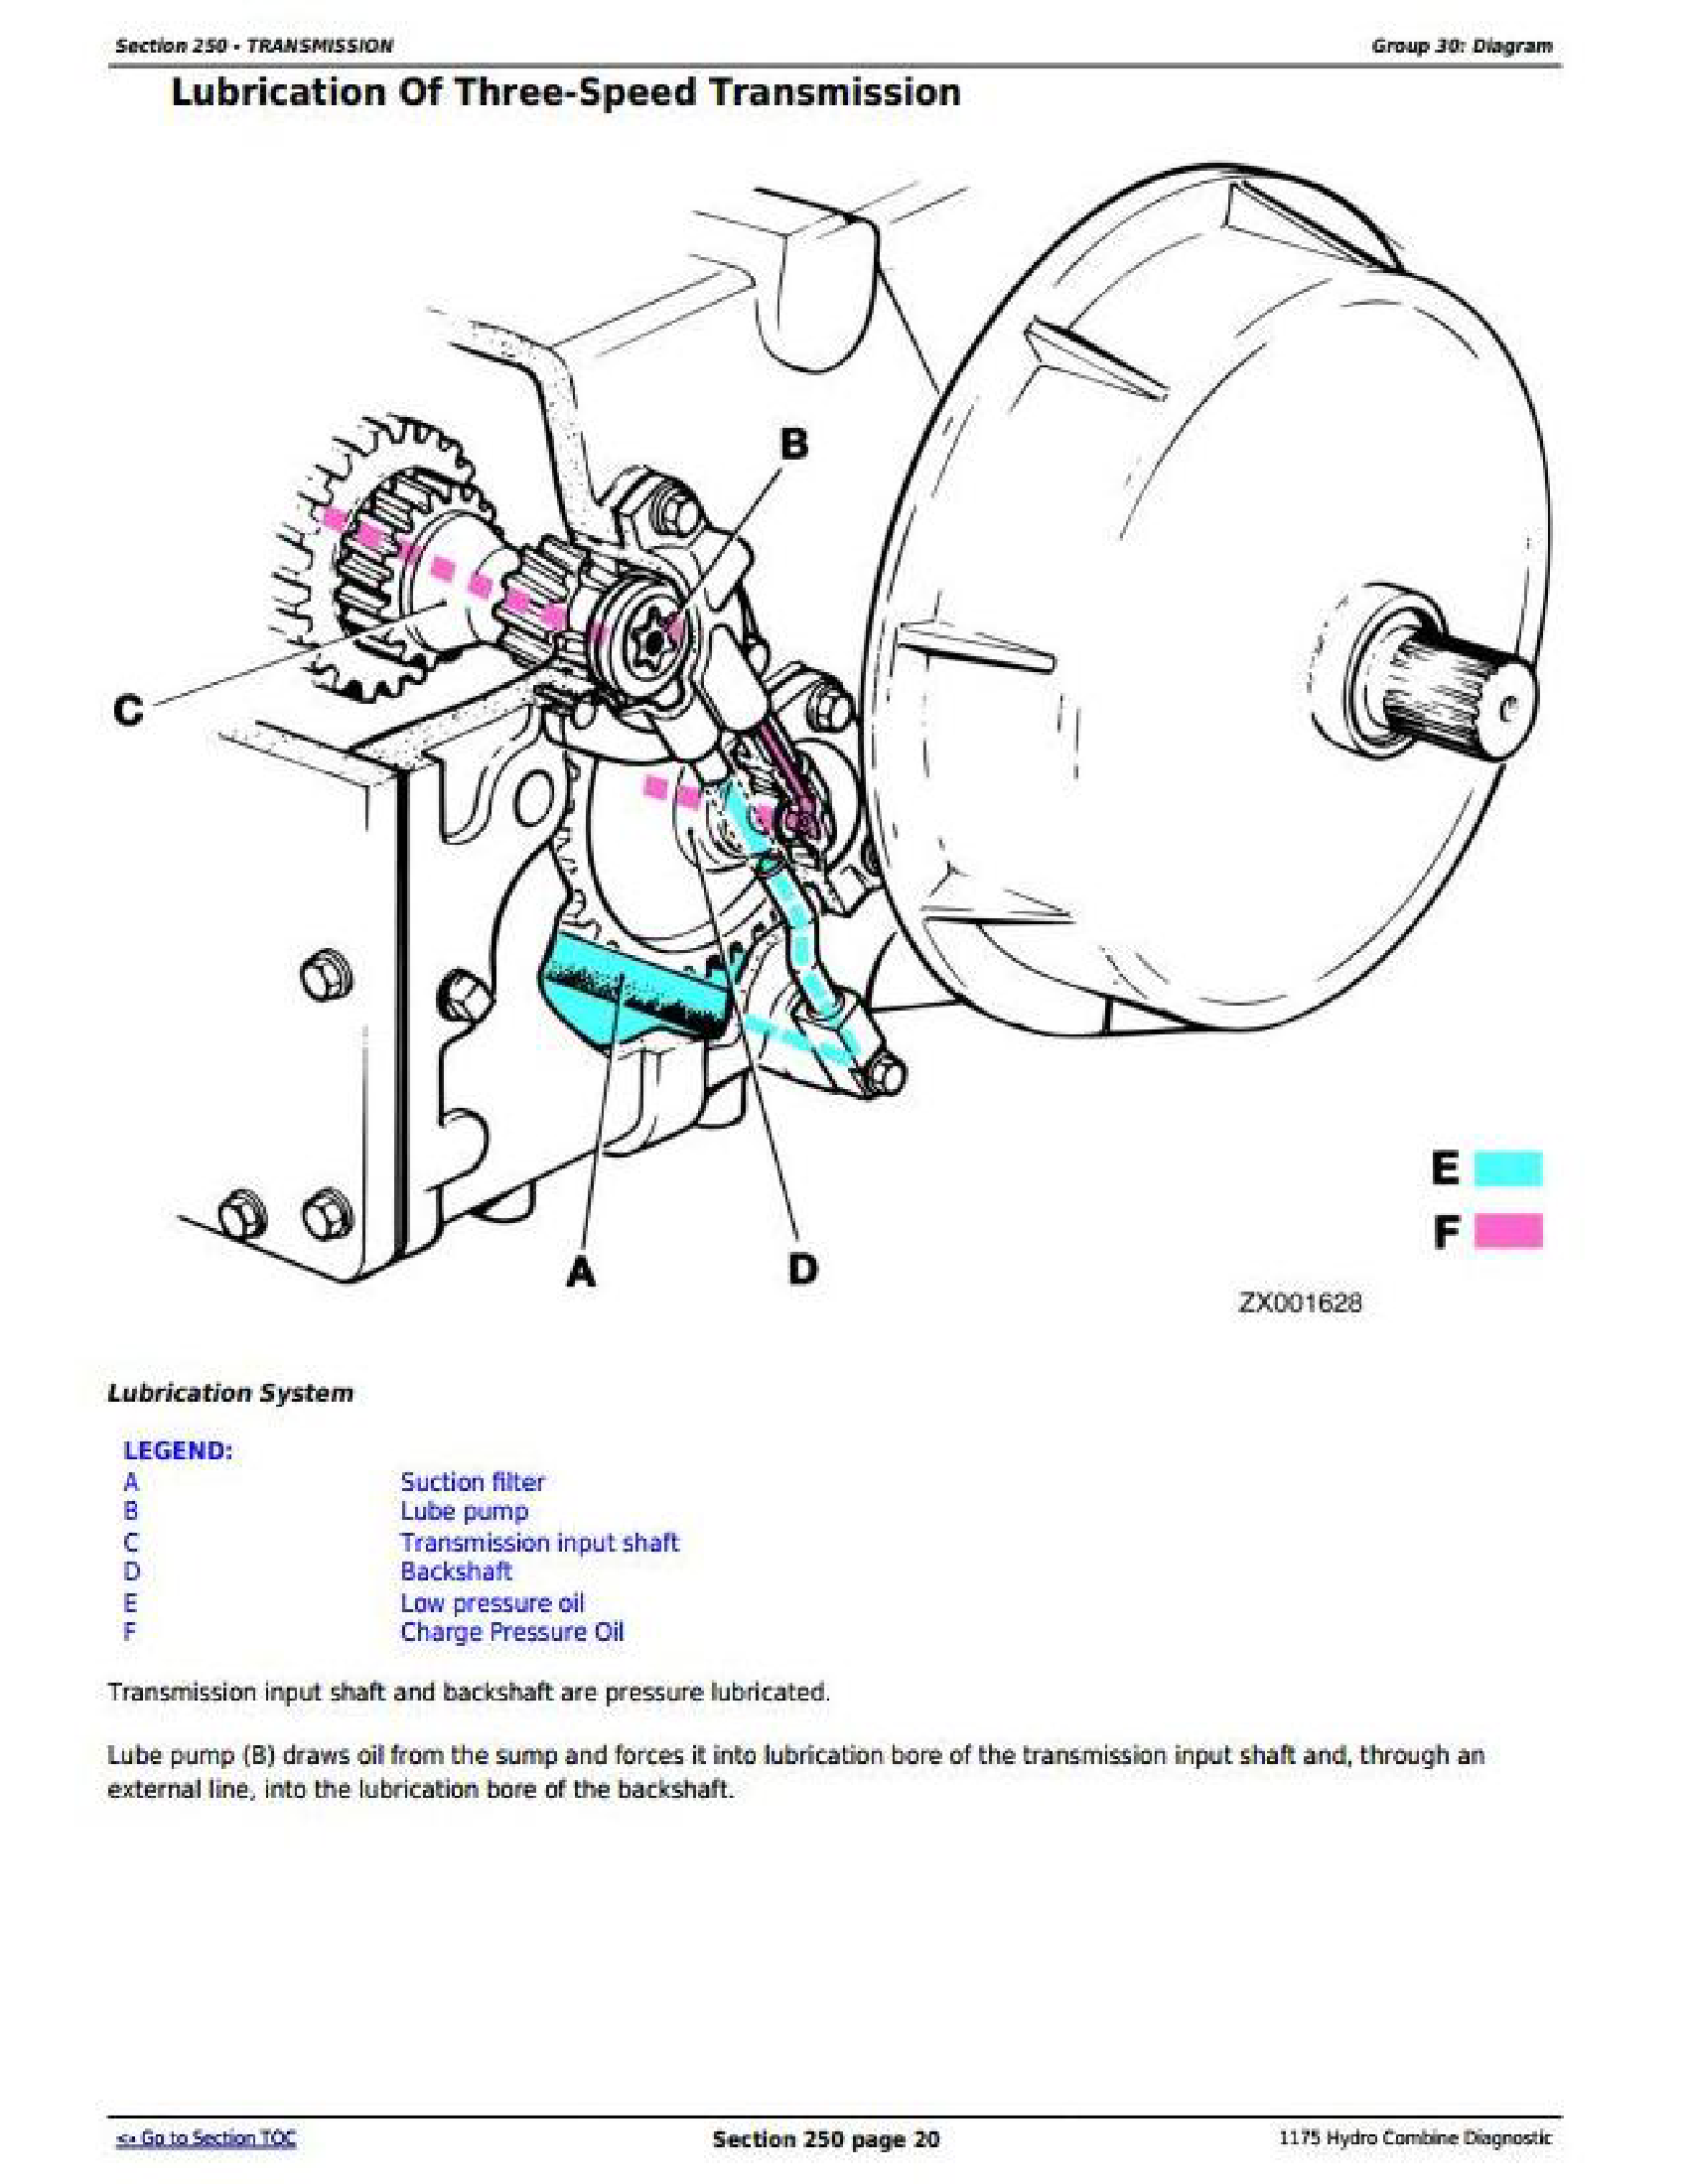 John Deere 1175 manual pdf